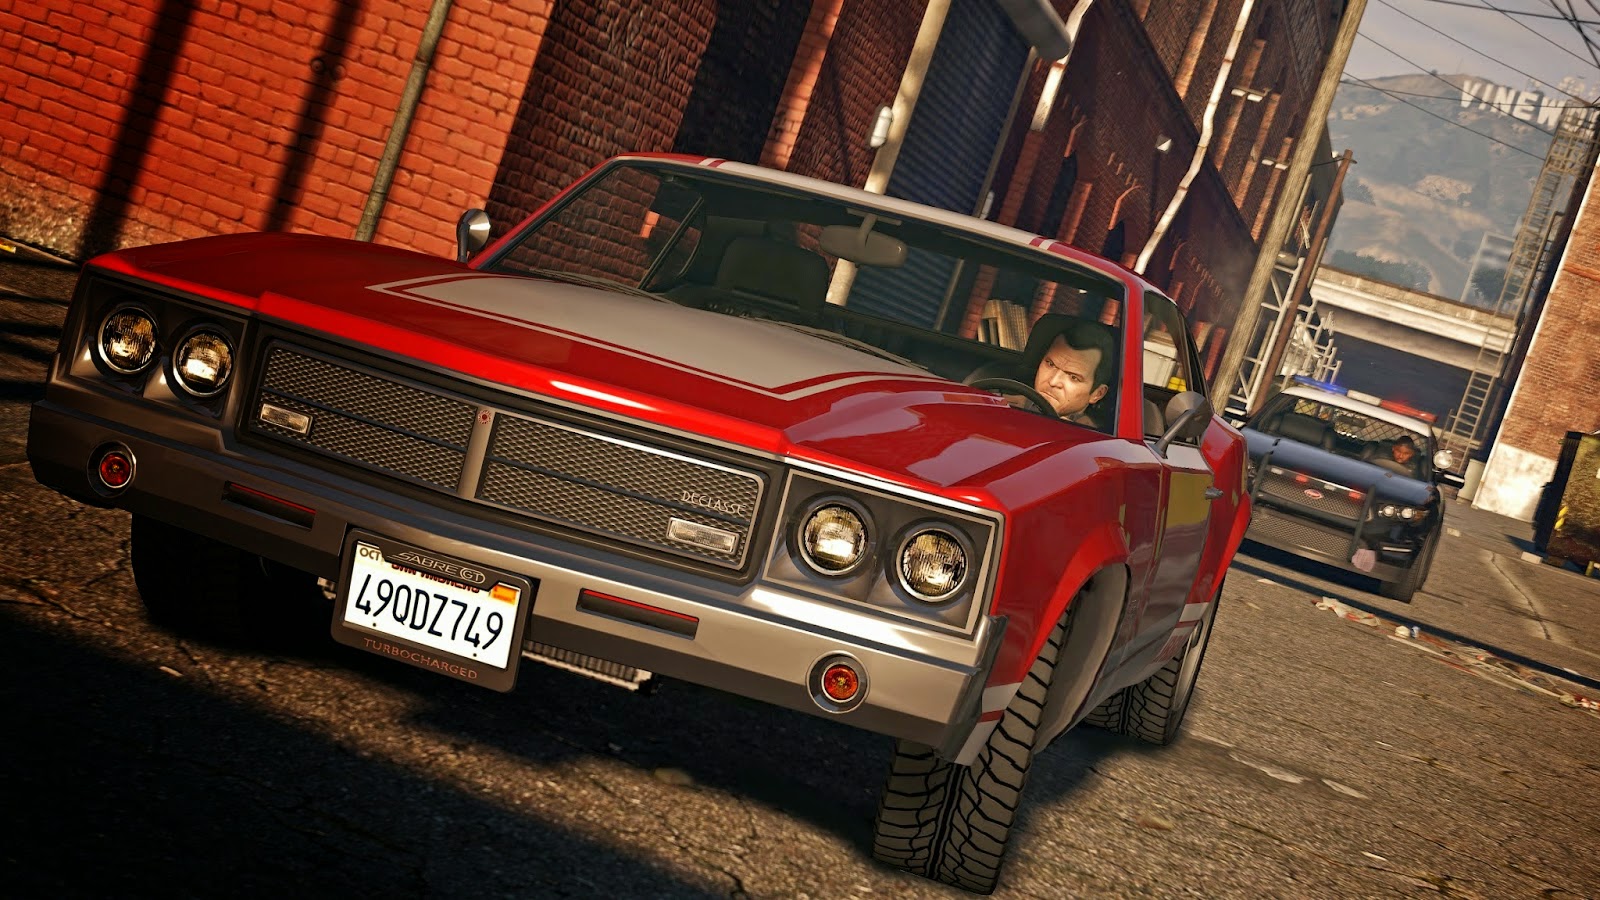 تحميل لعبة Grand Theft Auto V Pc نسخة كاملة كاملة للكمبيوتر Almohtarif